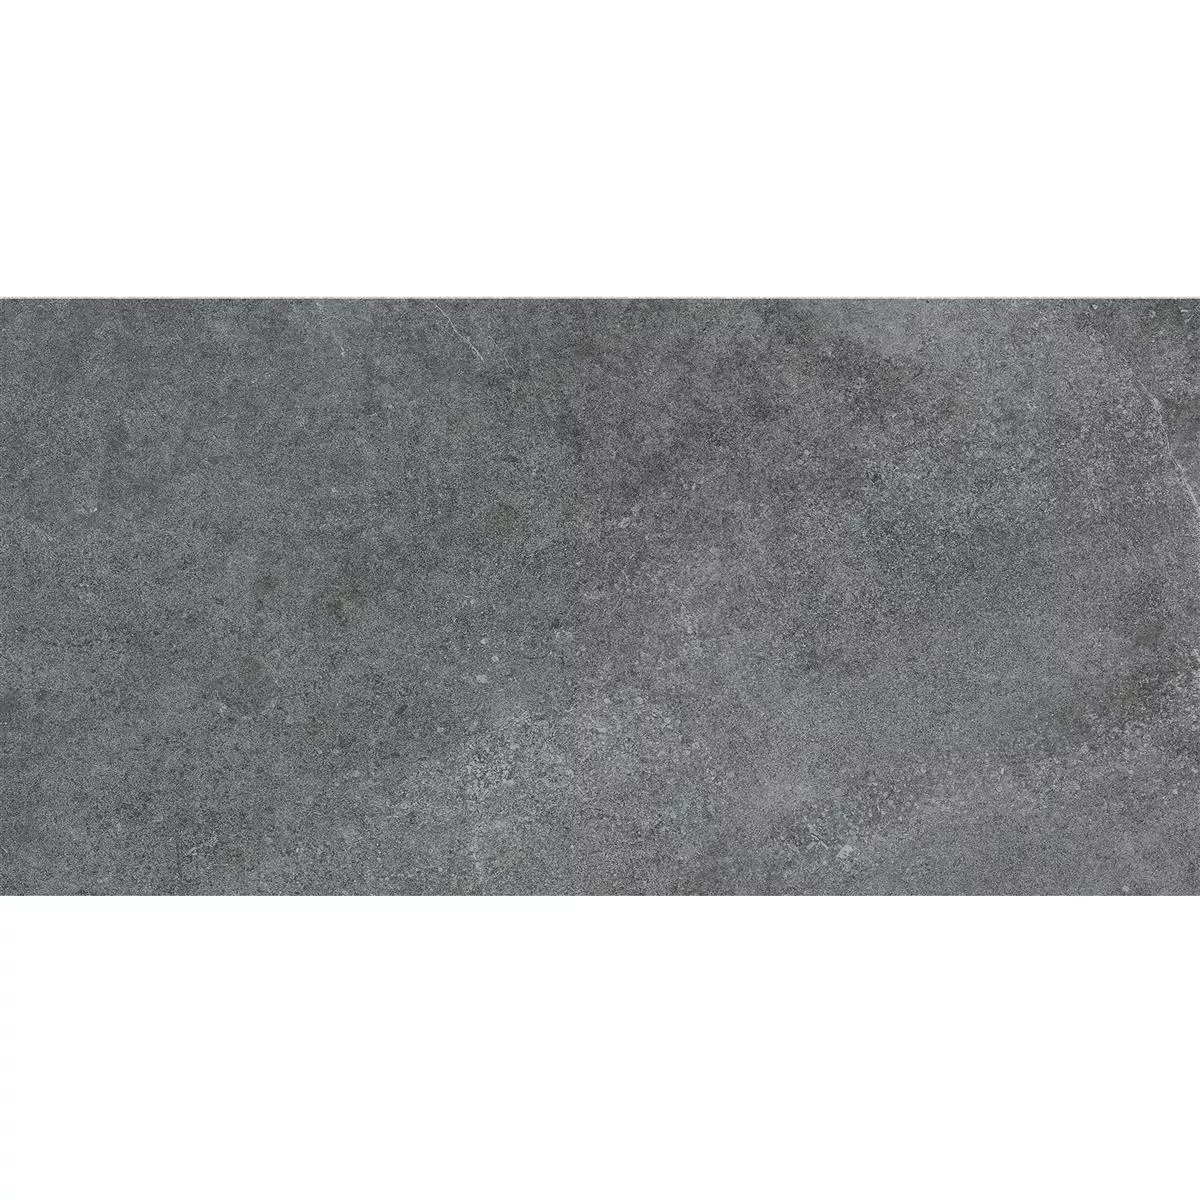 Πρότυπο Πλακάκια Δαπέδου Montana Άγυαλο Ανθρακίτης 30x60cm / R10B